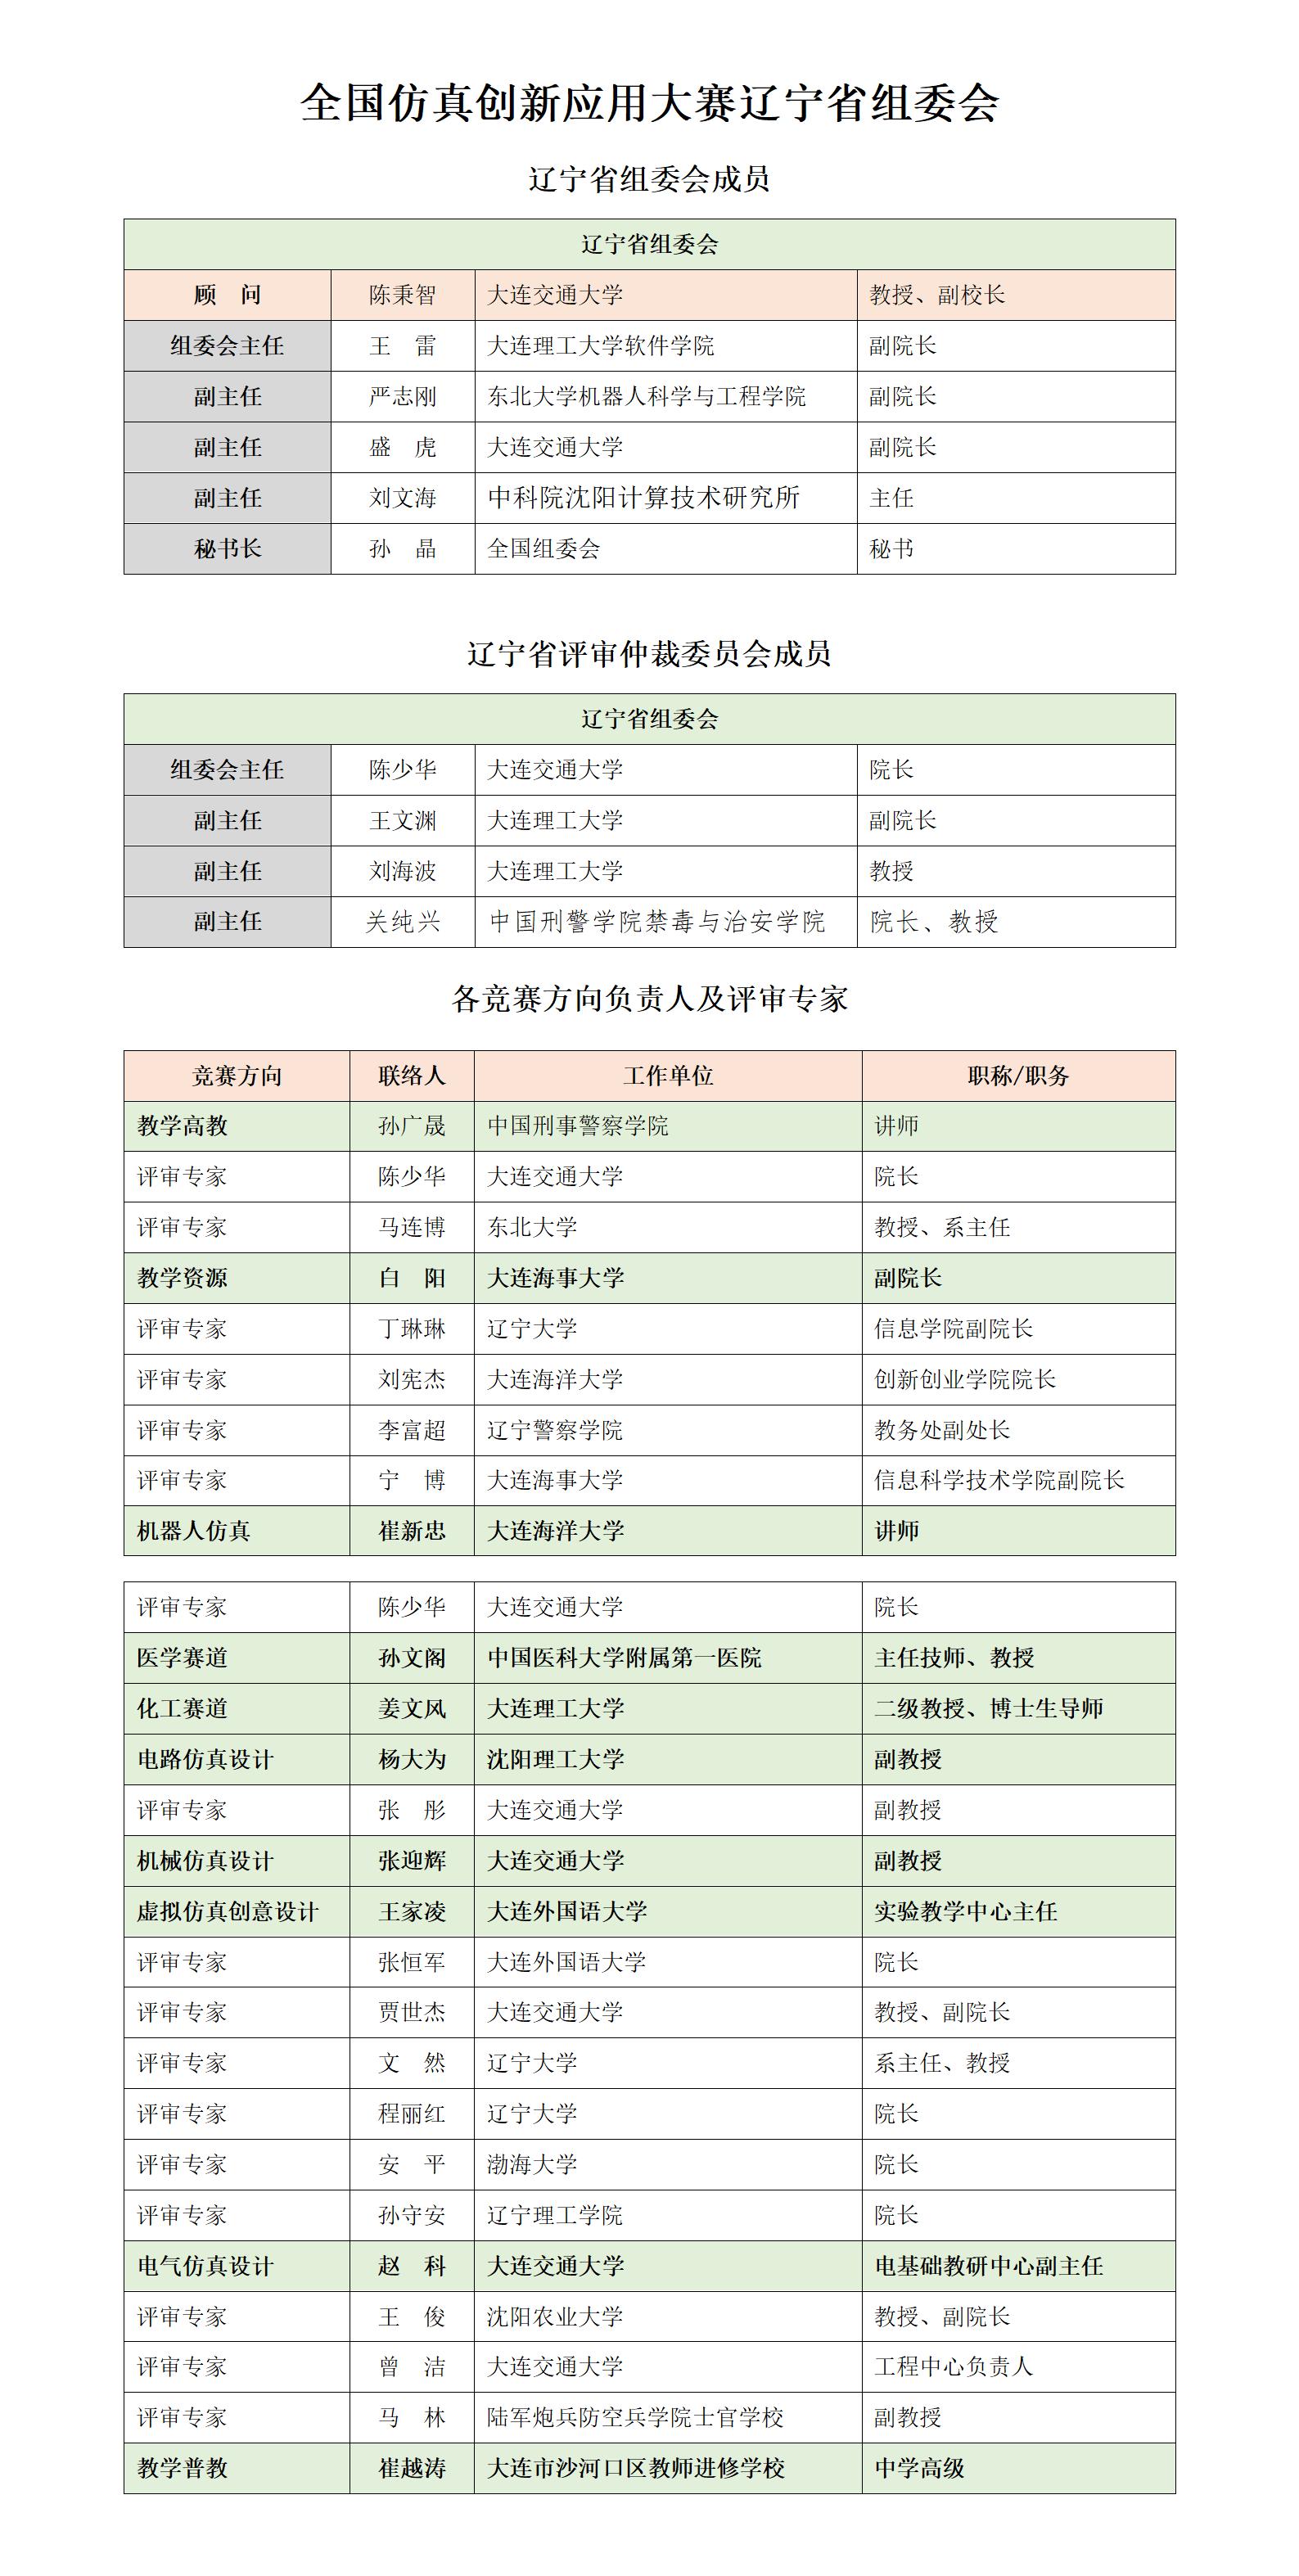 辽宁省赛区组委会及专家名录对外公布版_01.jpg